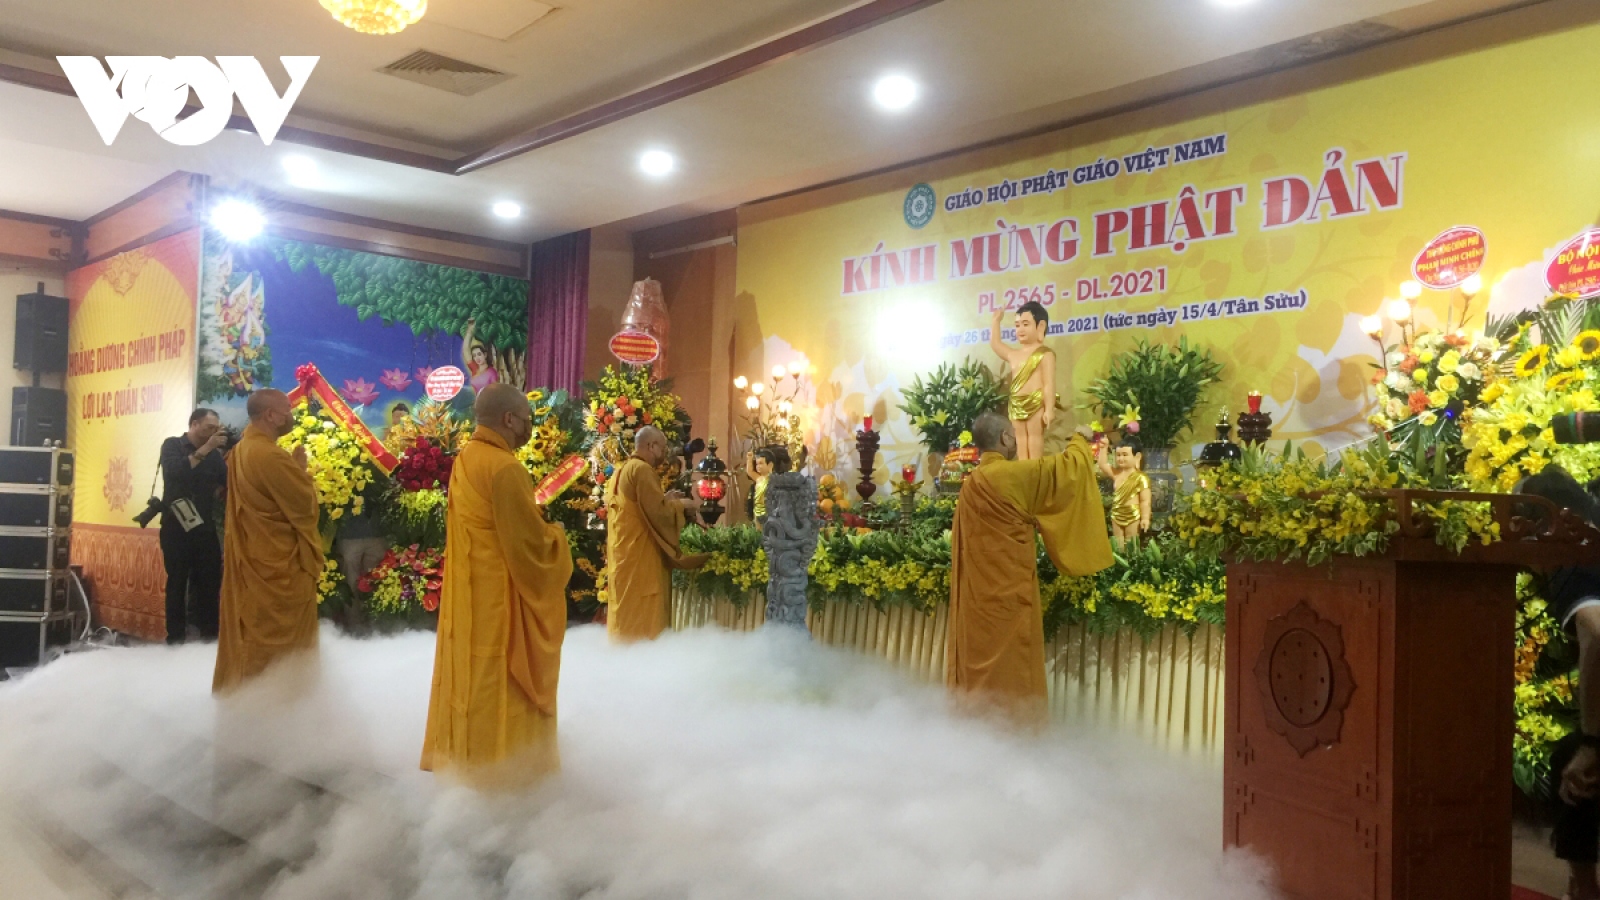 Vietnam Buddhist Sangha to celebrate 40th anniversary this week